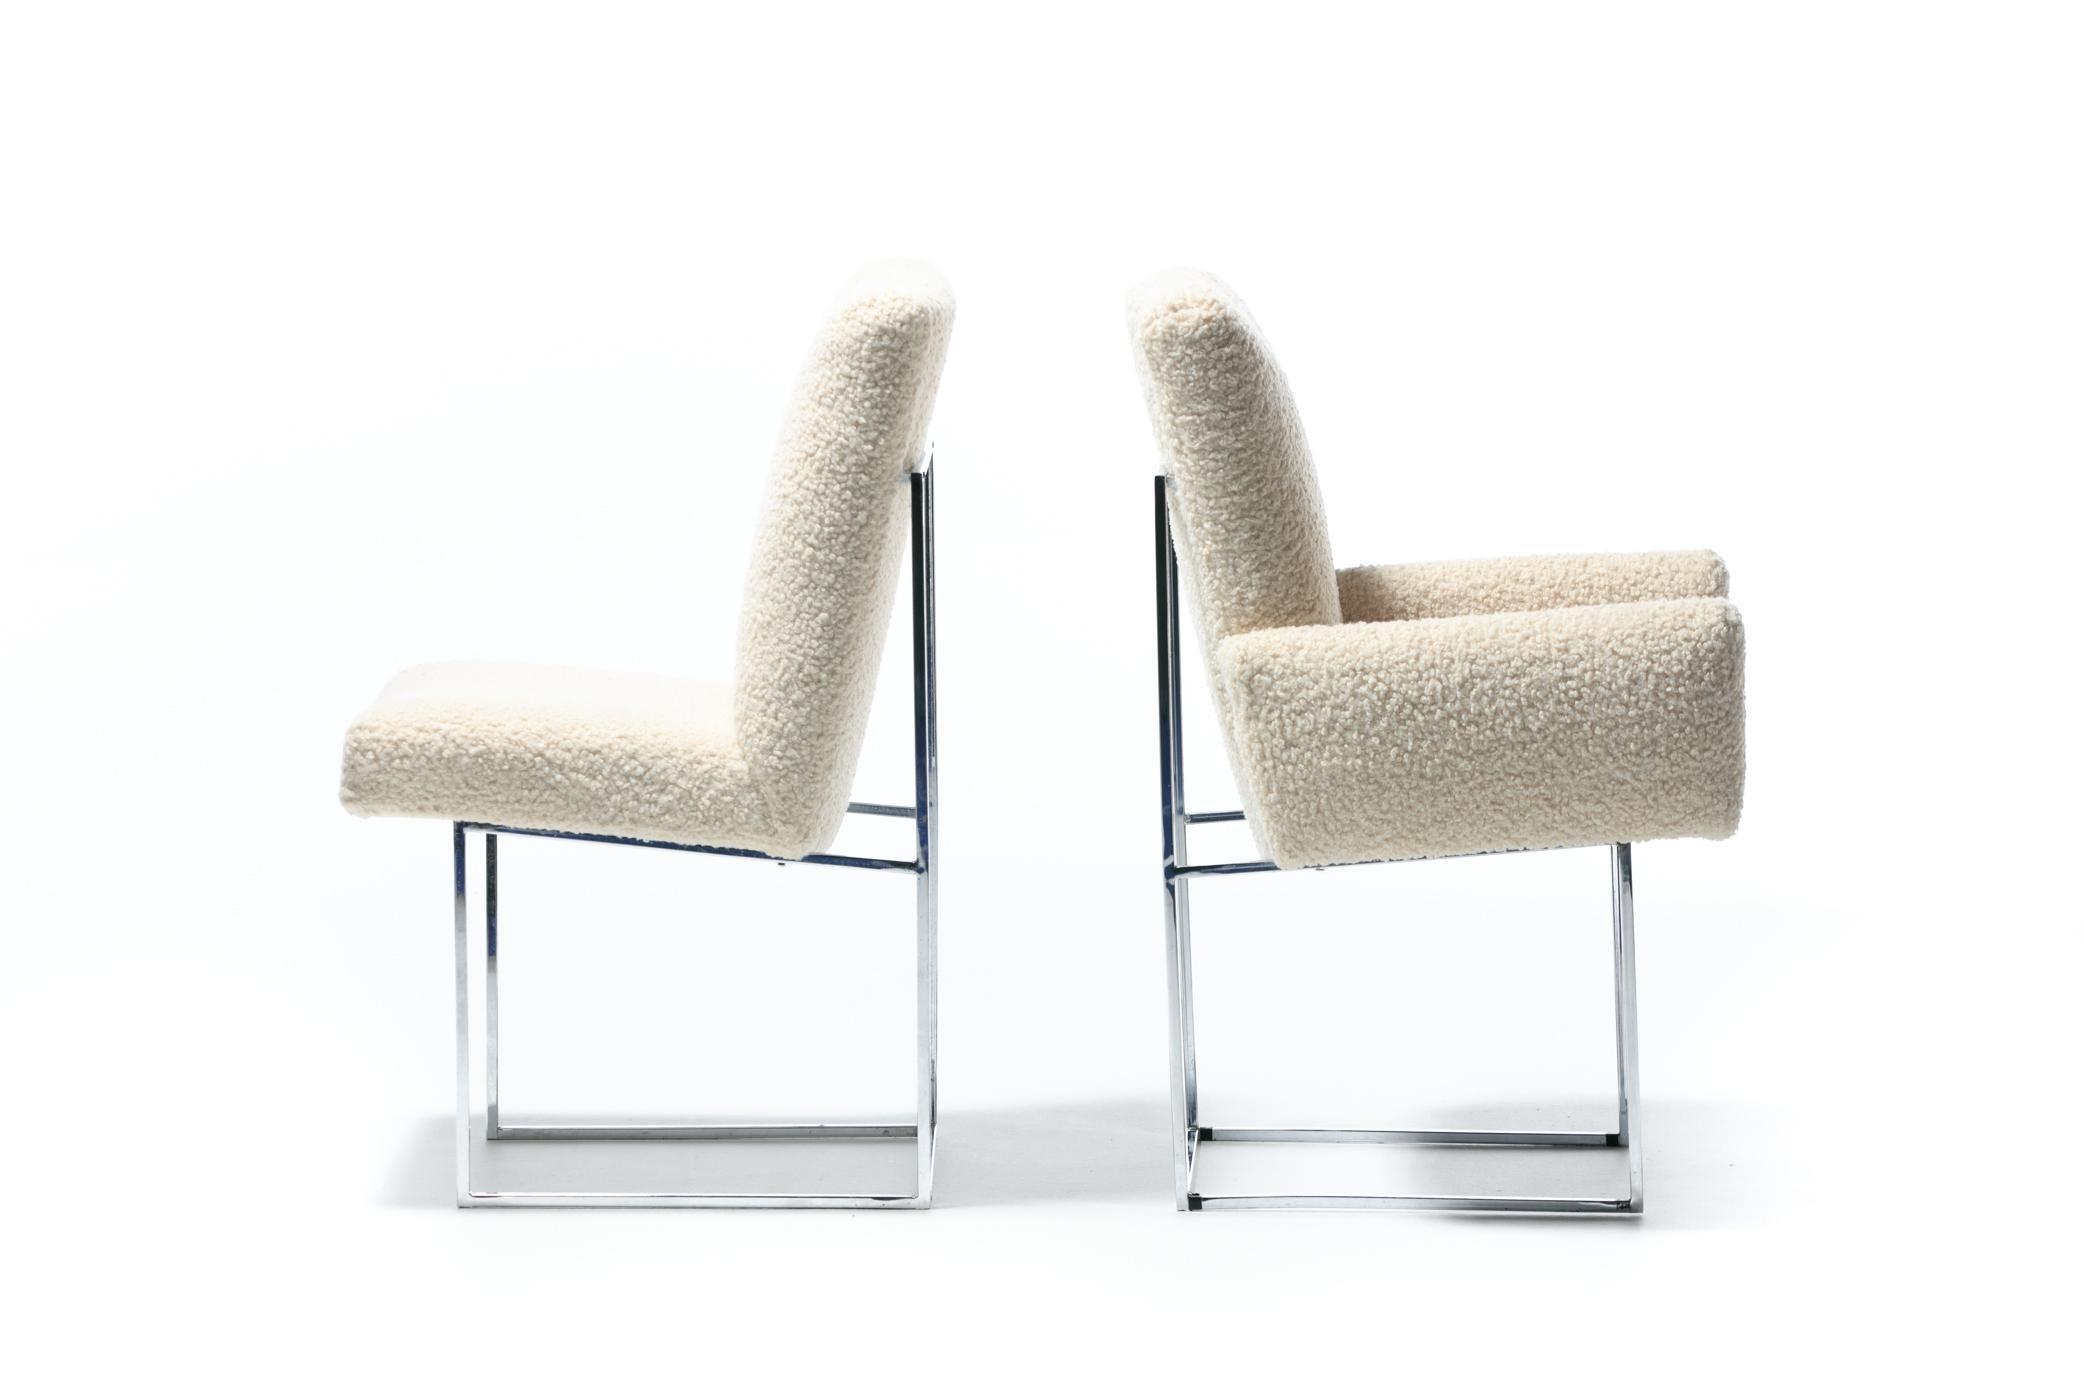 Magnifique ensemble de 12 chaises de salle à manger en acier inoxydable poli, modèle 1187 de Milo Baughman, pour Thayer IcCon, fraîchement retapissées en tissu bouclé ivoire, vers 1970. L'aspect est net, moderne et luxueux. Les armatures